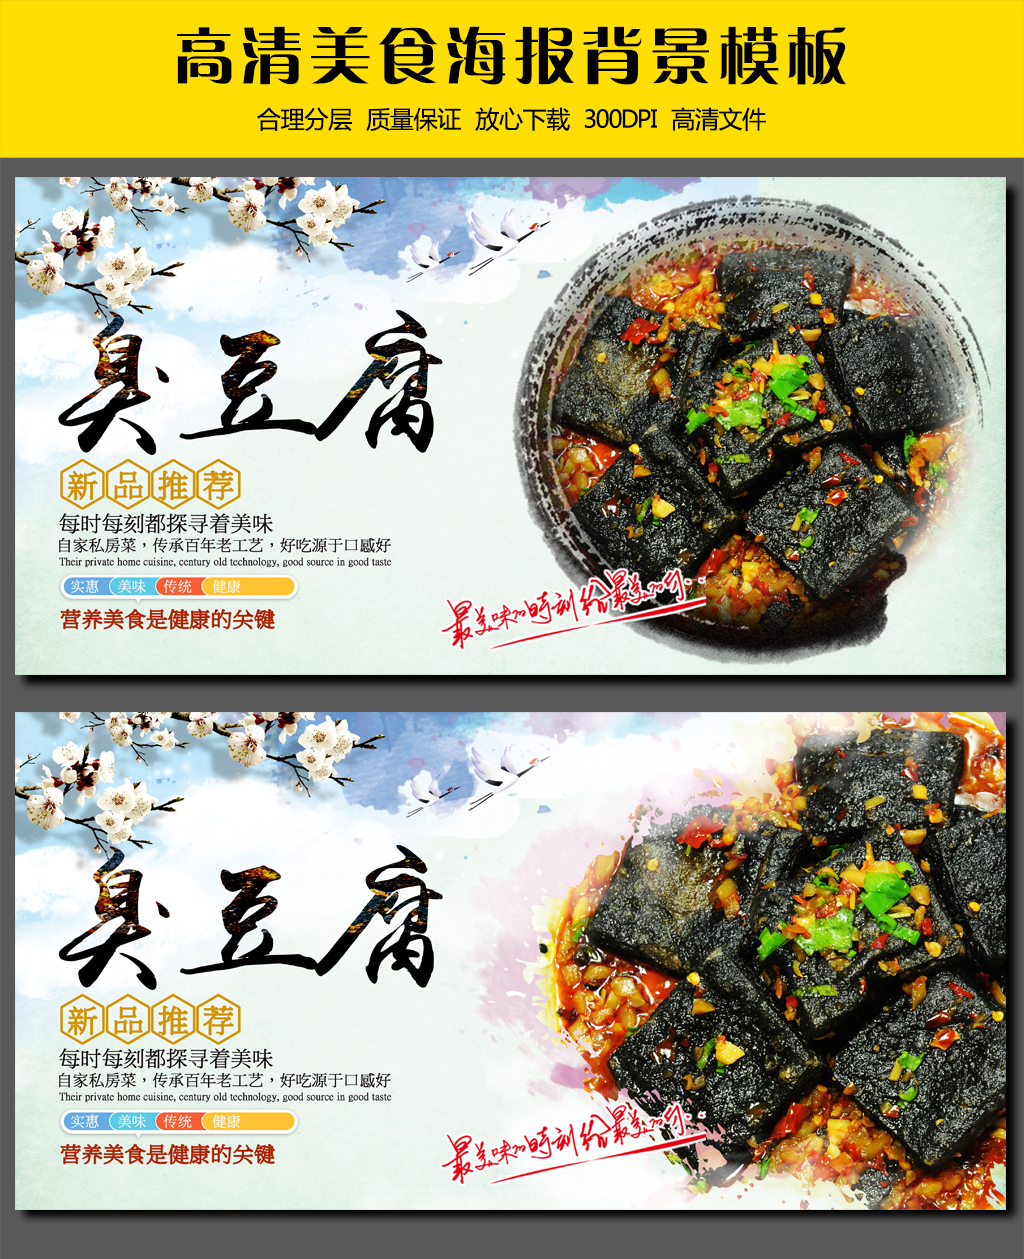 臭豆腐美食广告海报招贴展板设计模板图片素材